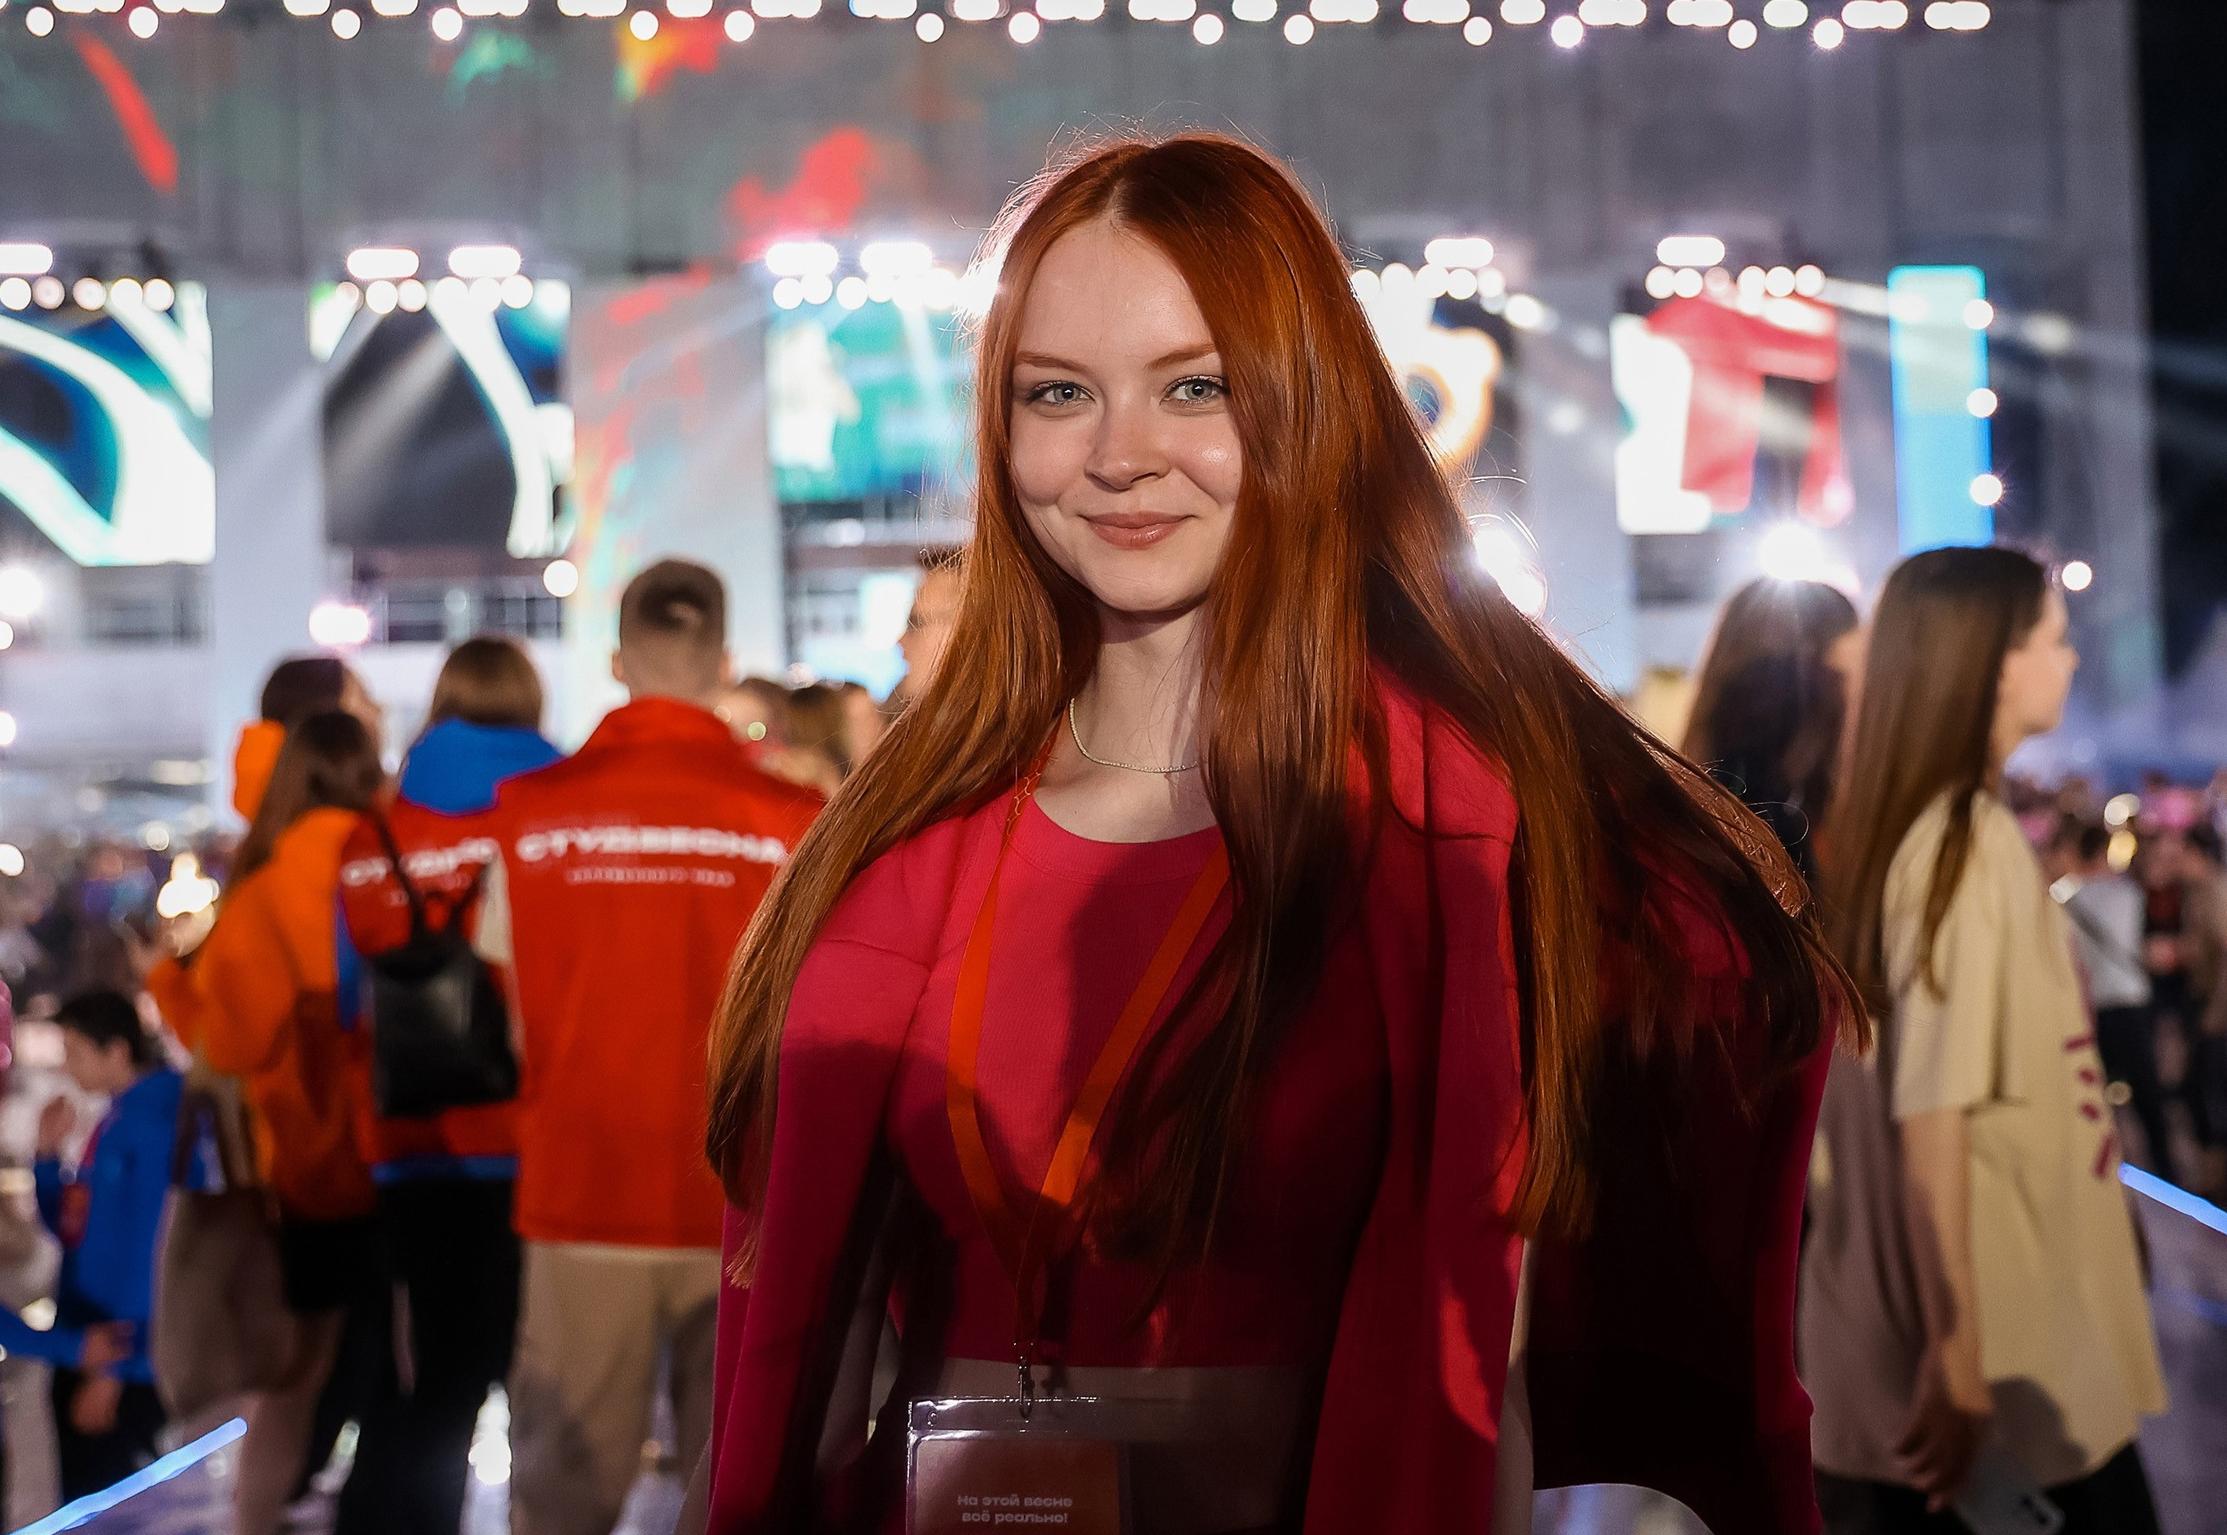 Российская студенческая весна начинает региональные этапы проведения фестивалей 